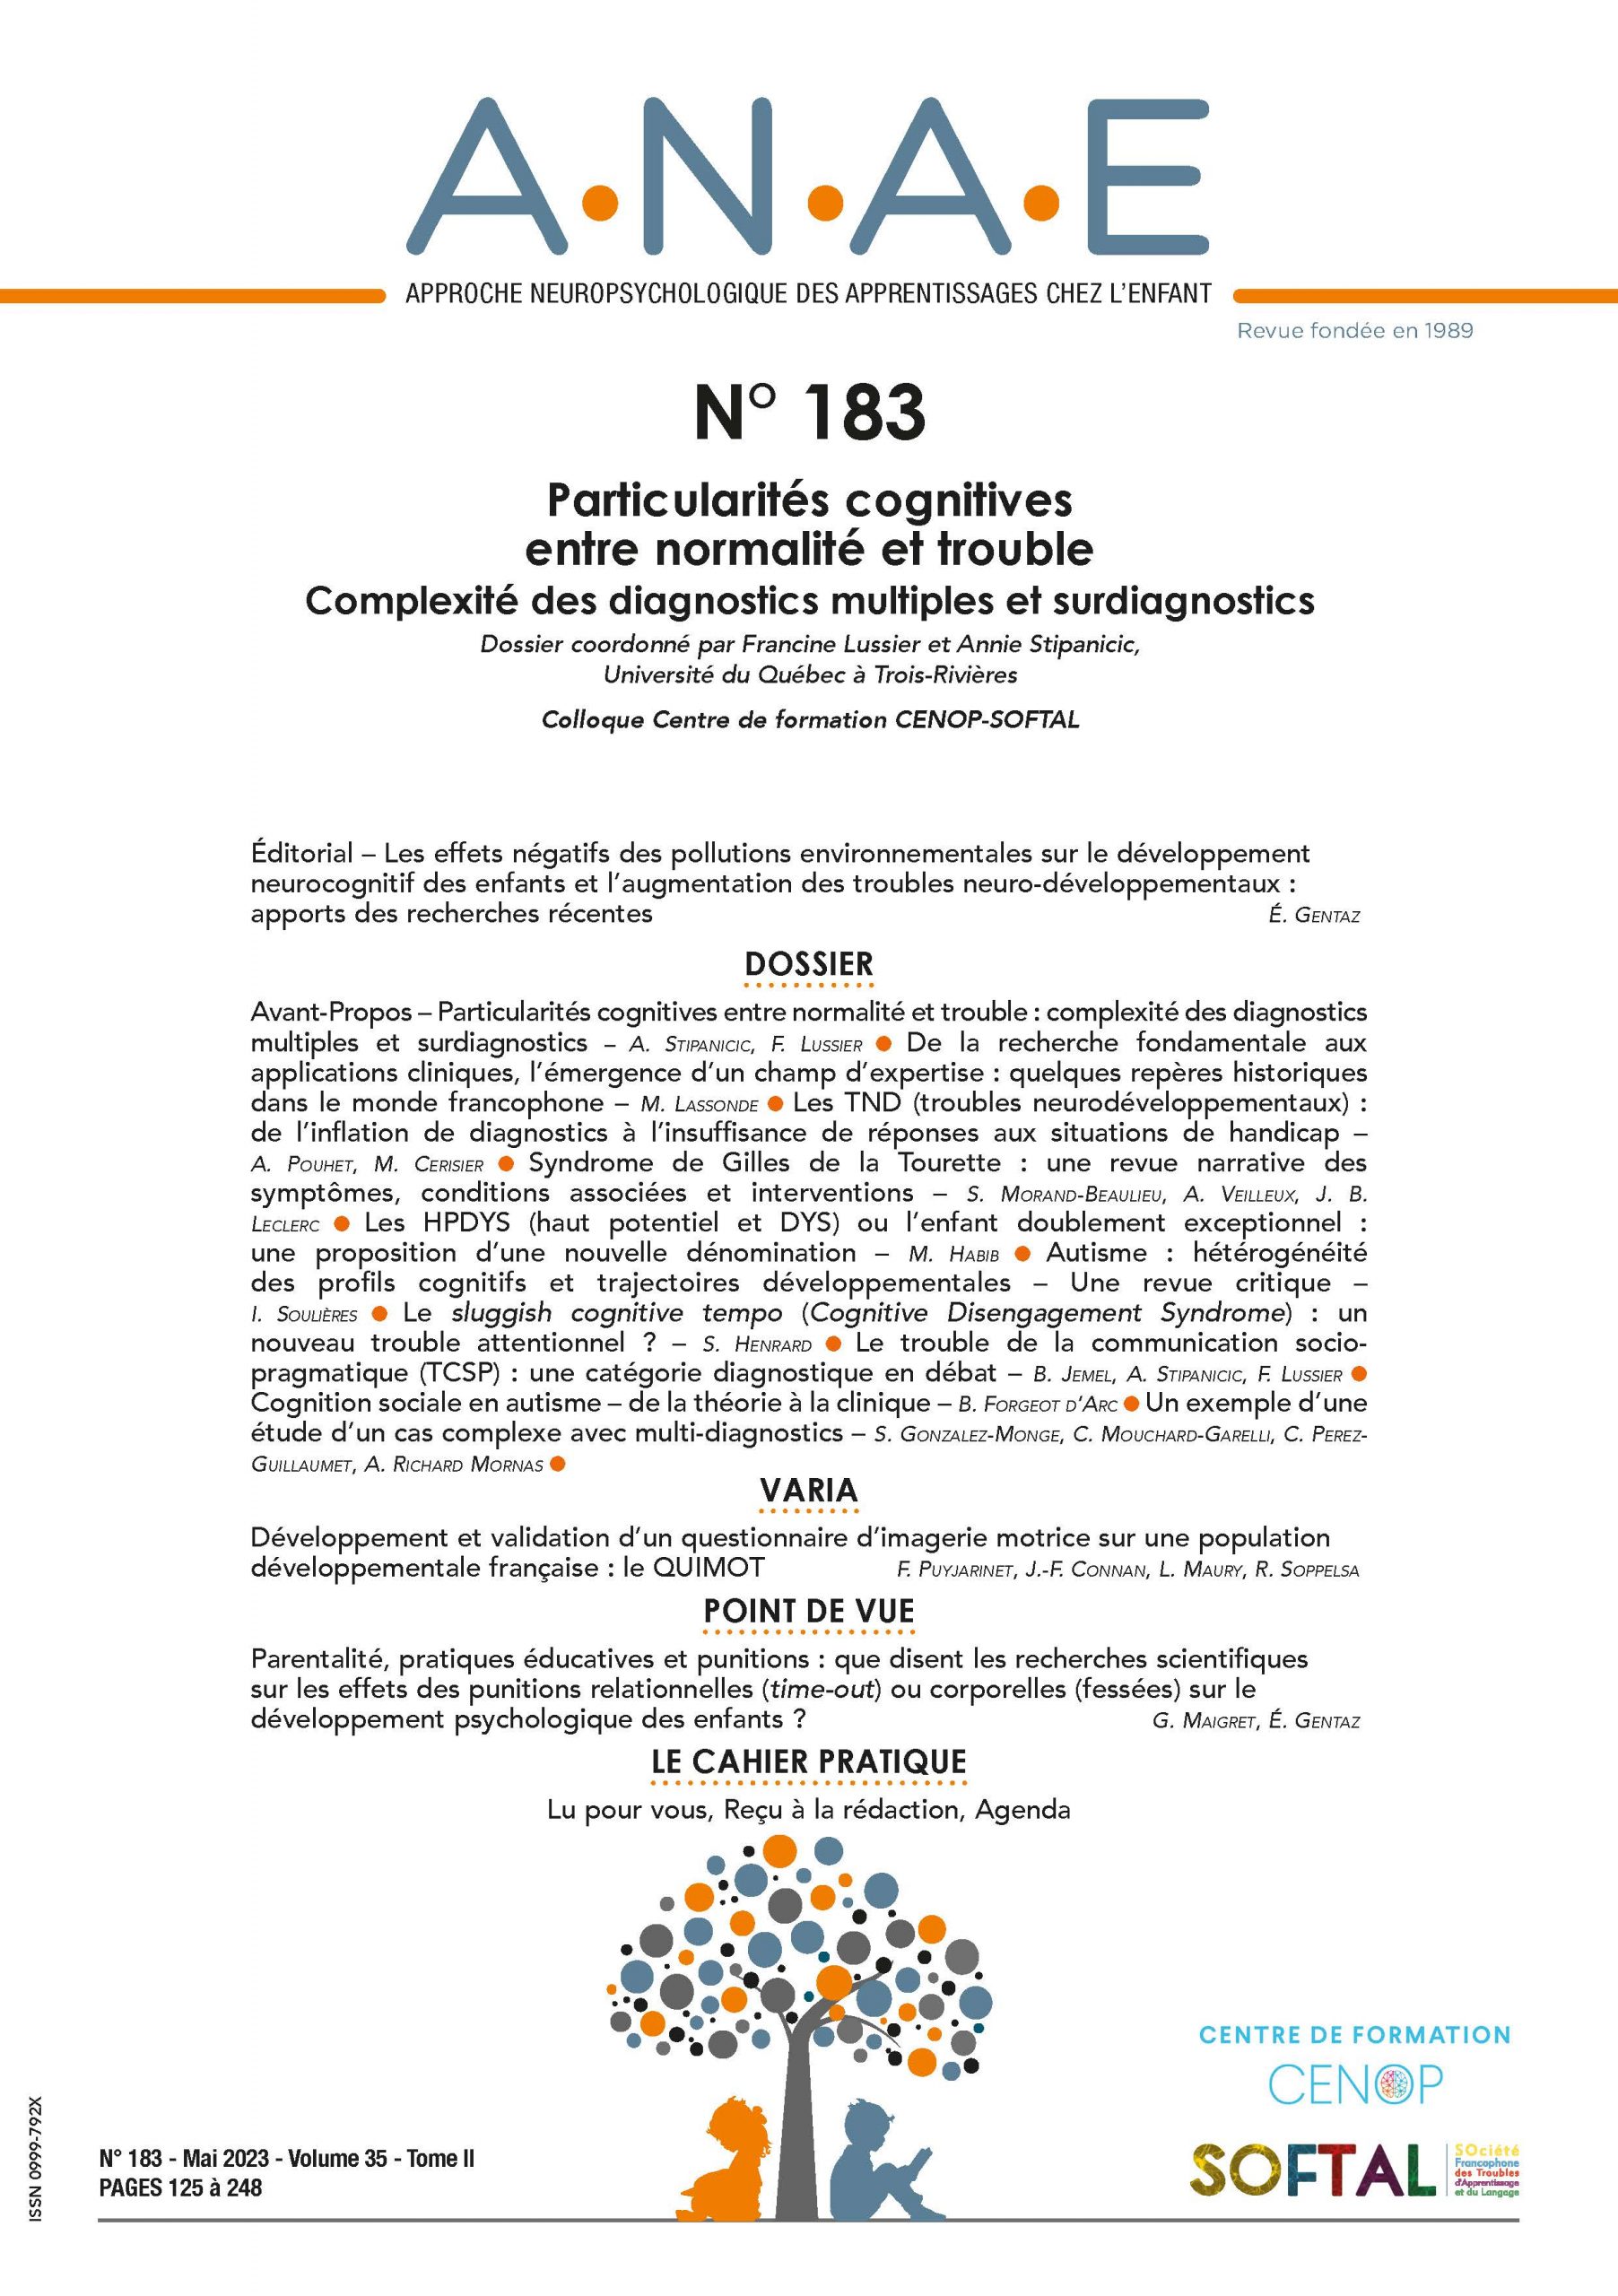 ANAE N° 183 - Particularités cognitives entre normalité et trouble - Complexité des diagnostics multiples et surdiagnostics